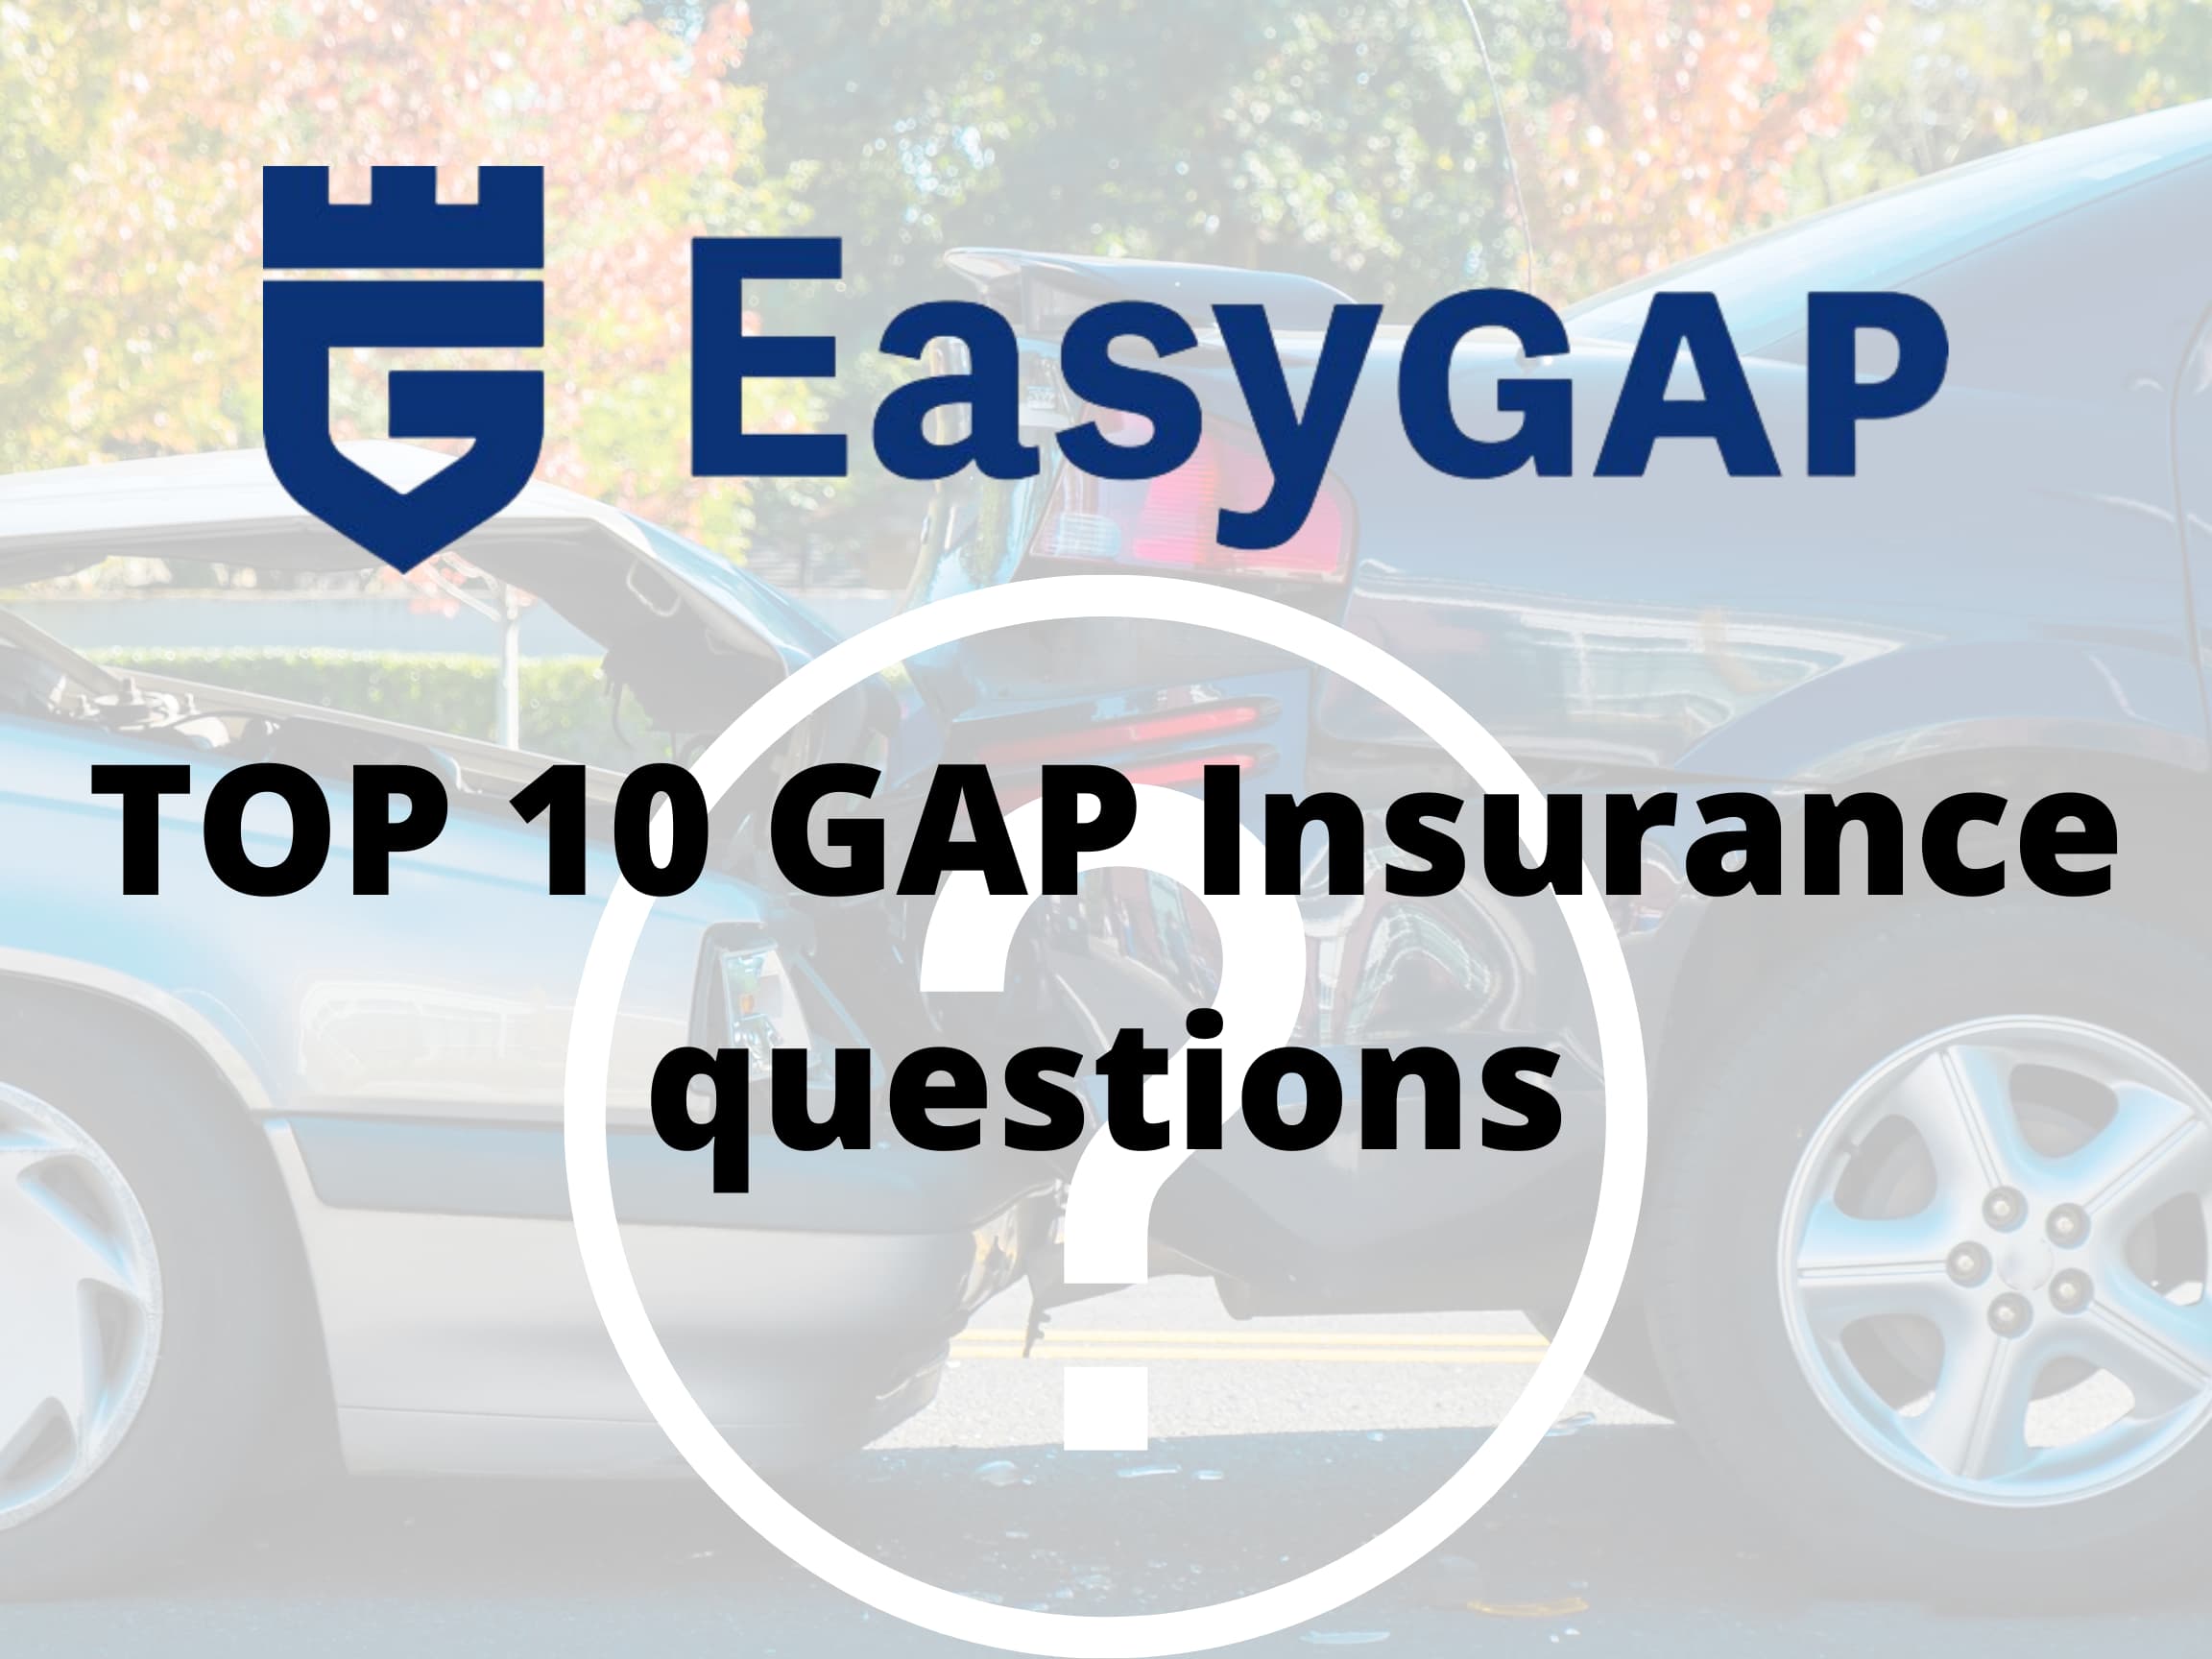 Top 10 Gap Insurance questions